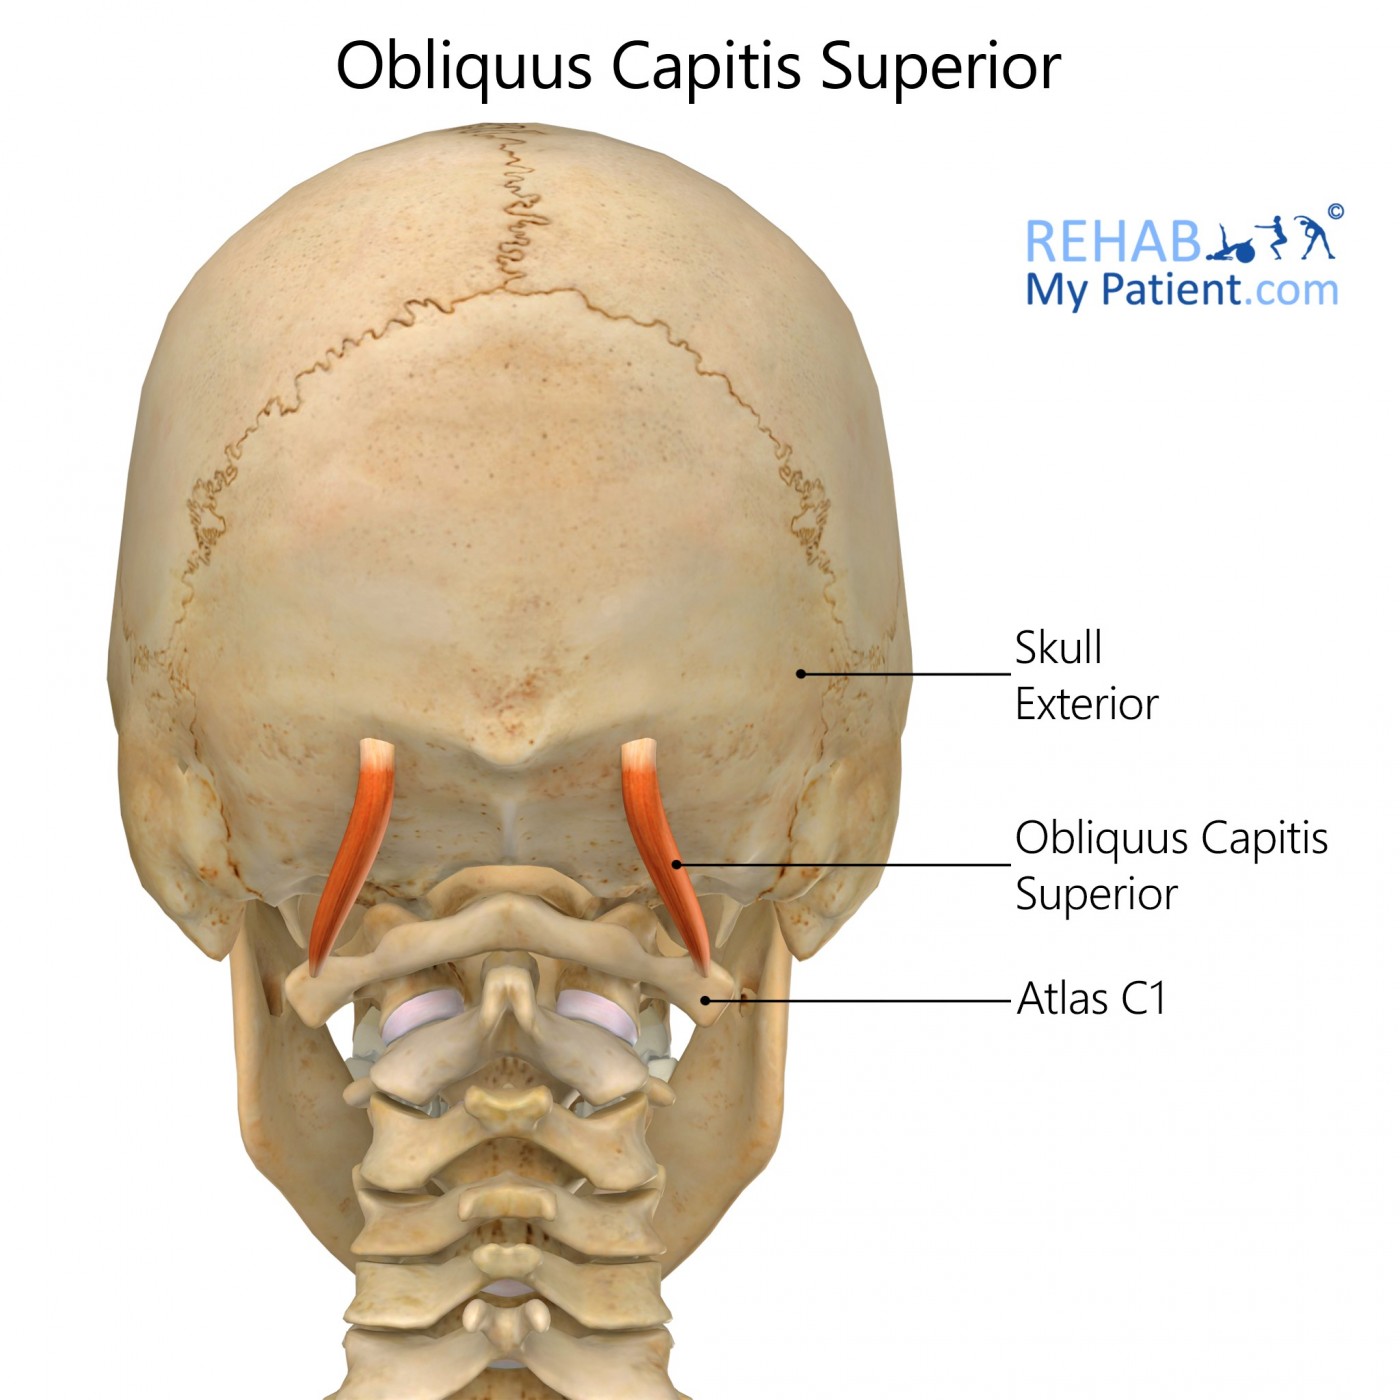 Obliquus Capitis Superior